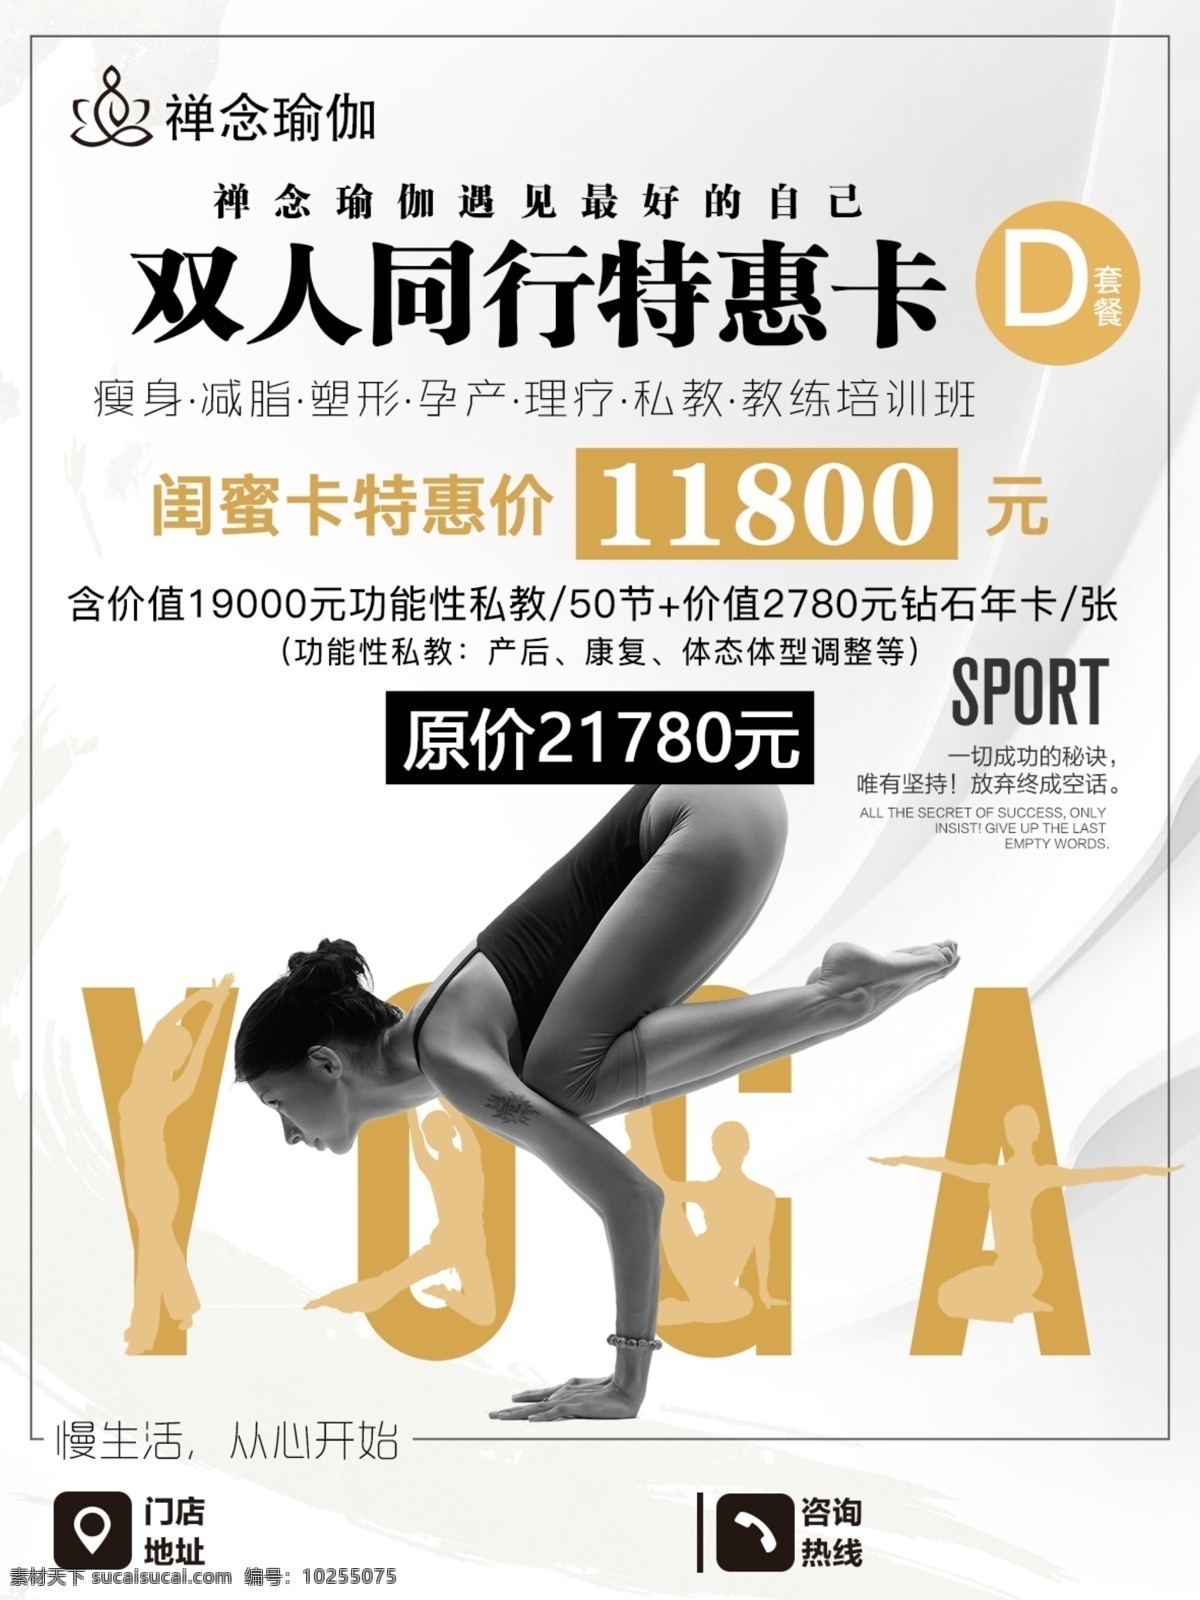 瑜伽海报 瑜伽 瘦身 减肥 健身 健康 美容 形体 海报 活动 广告